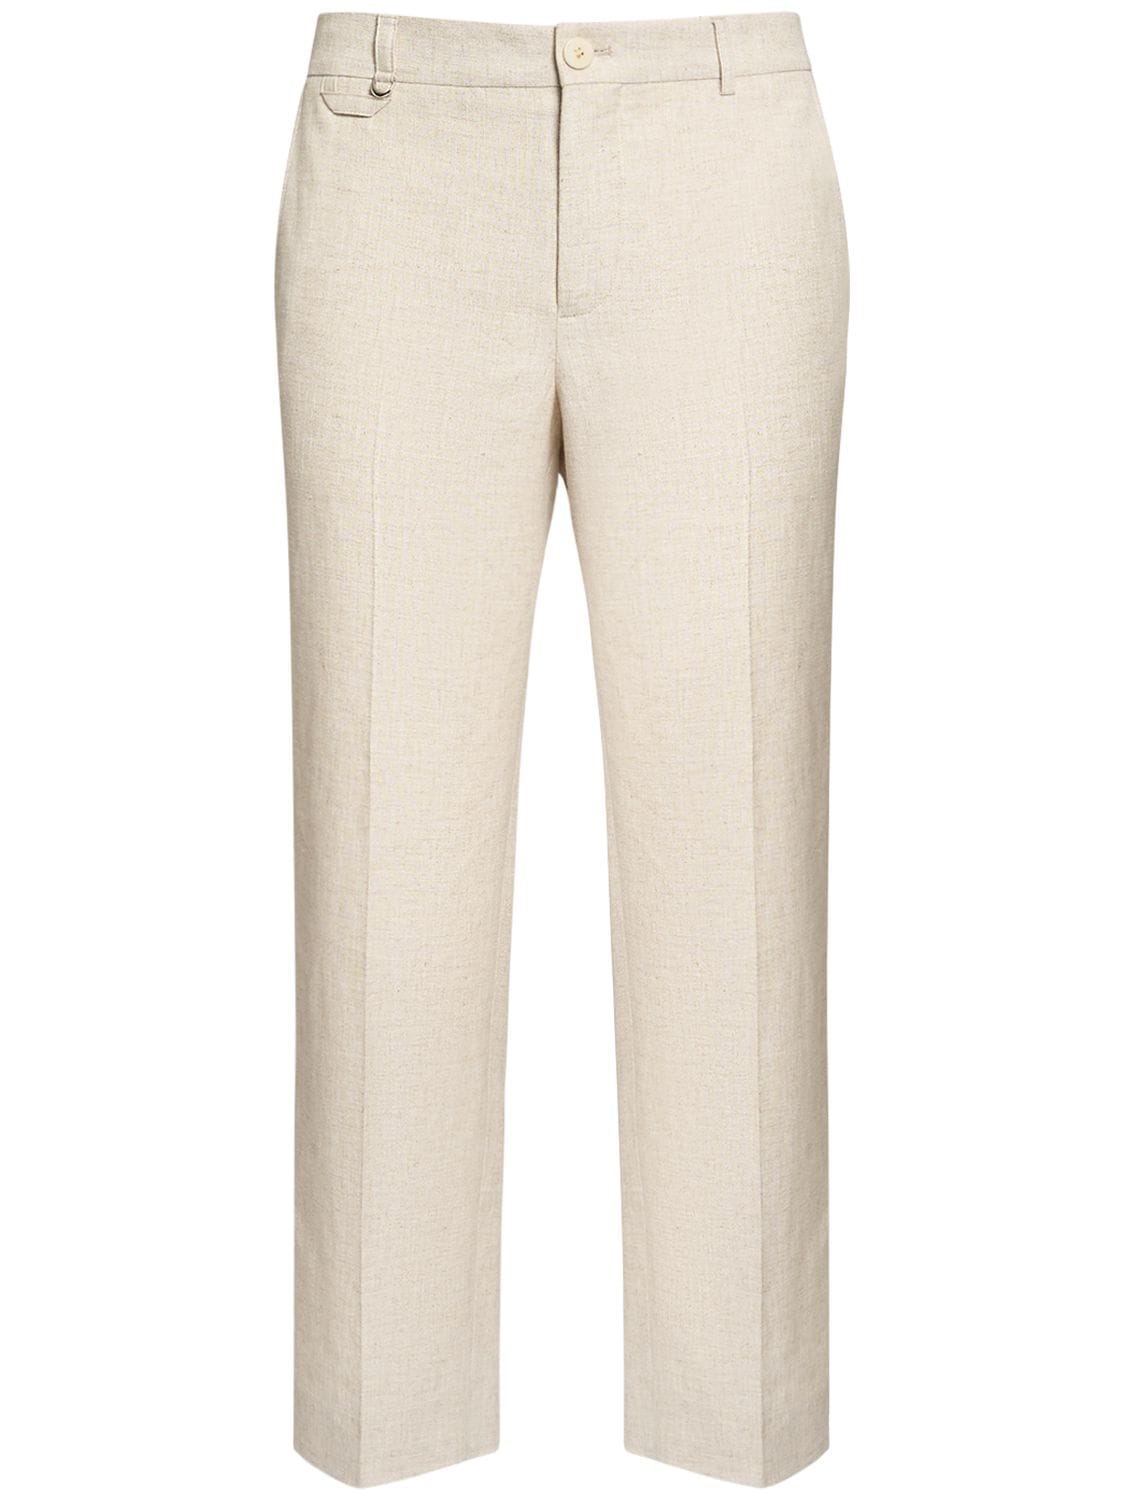 Image of Le Pantalon Cabri Viscose & Linen Pants